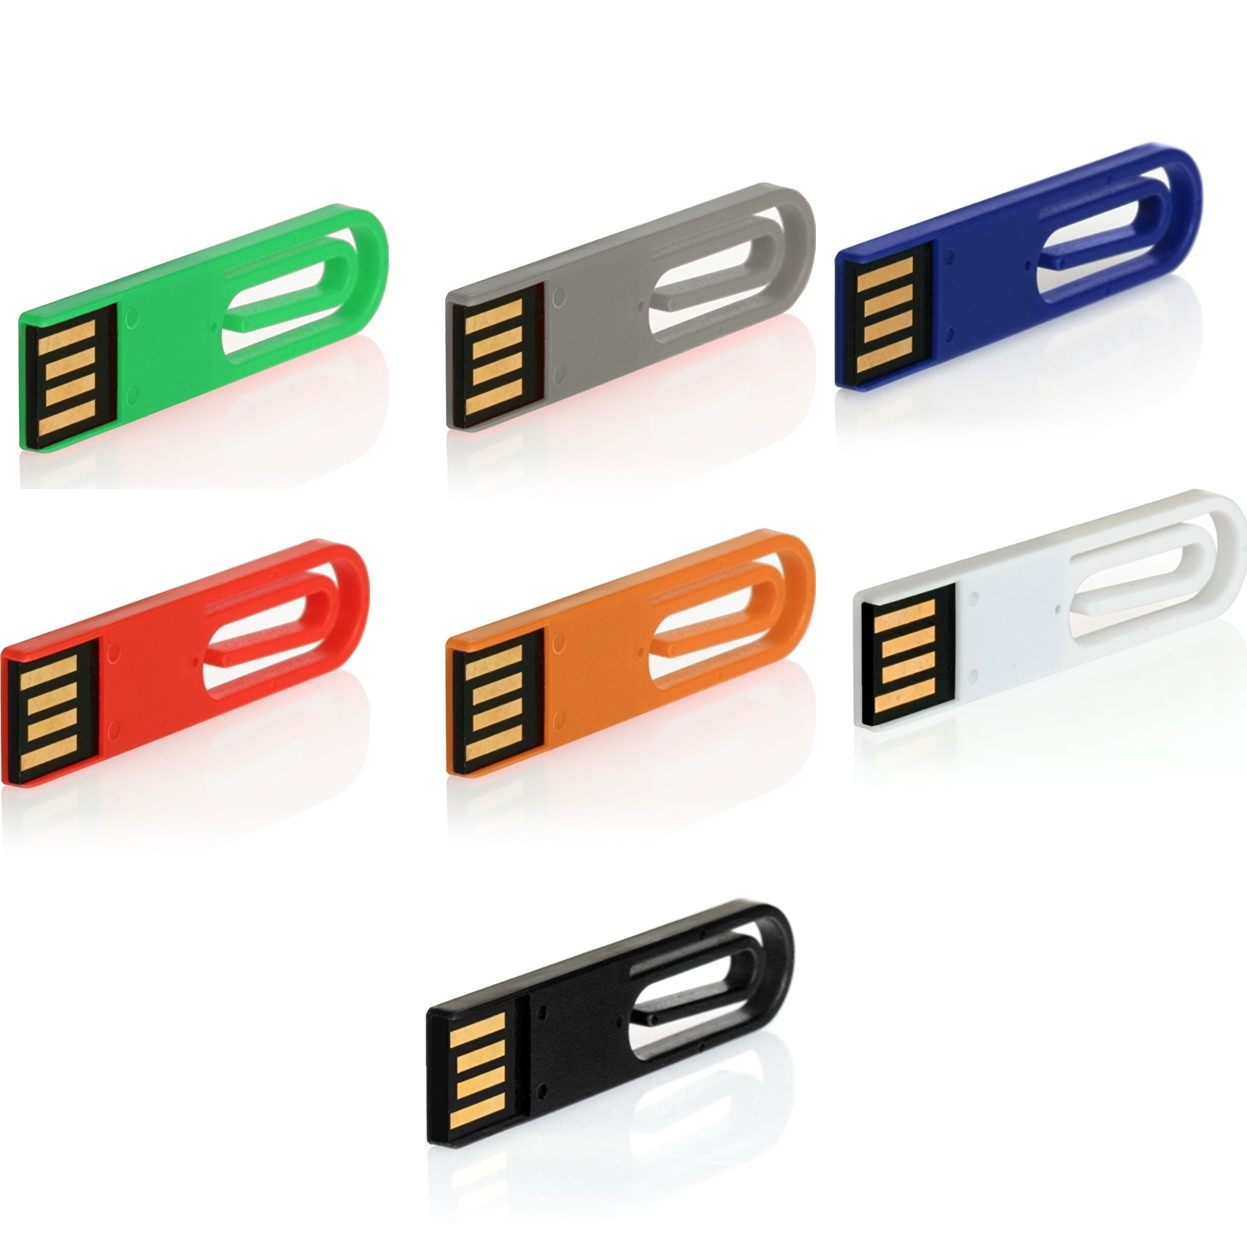 GB) ® USB GERMANY eCLIP (Grün, 128 USB-Stick